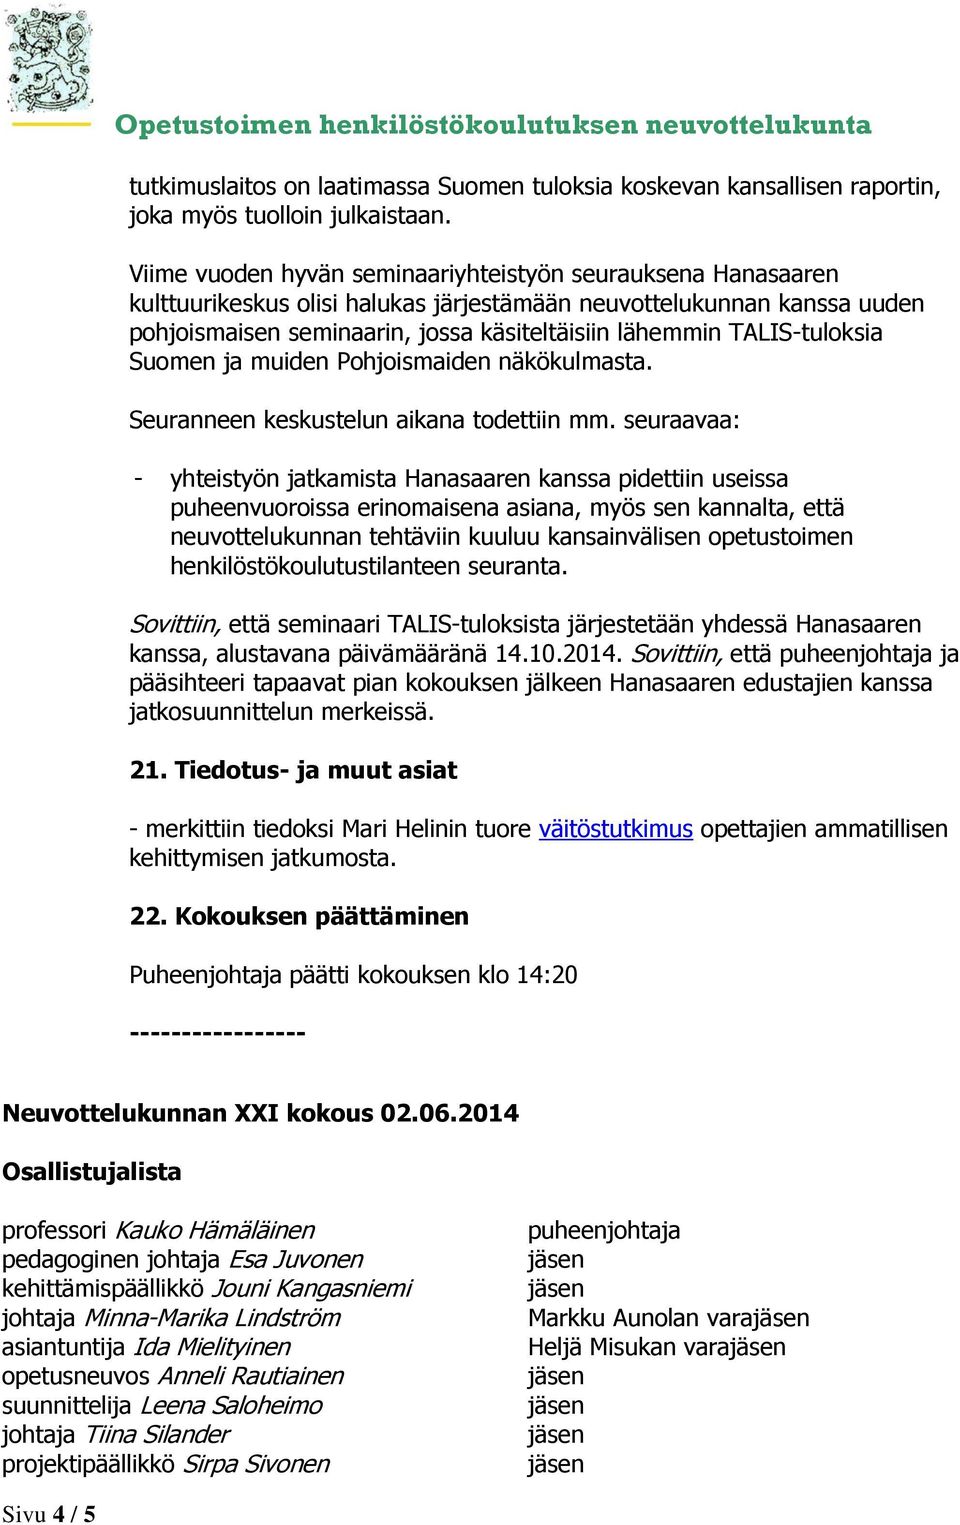 TALIS-tuloksia Suomen ja muiden Pohjoismaiden näkökulmasta. Seuranneen keskustelun aikana todettiin mm.